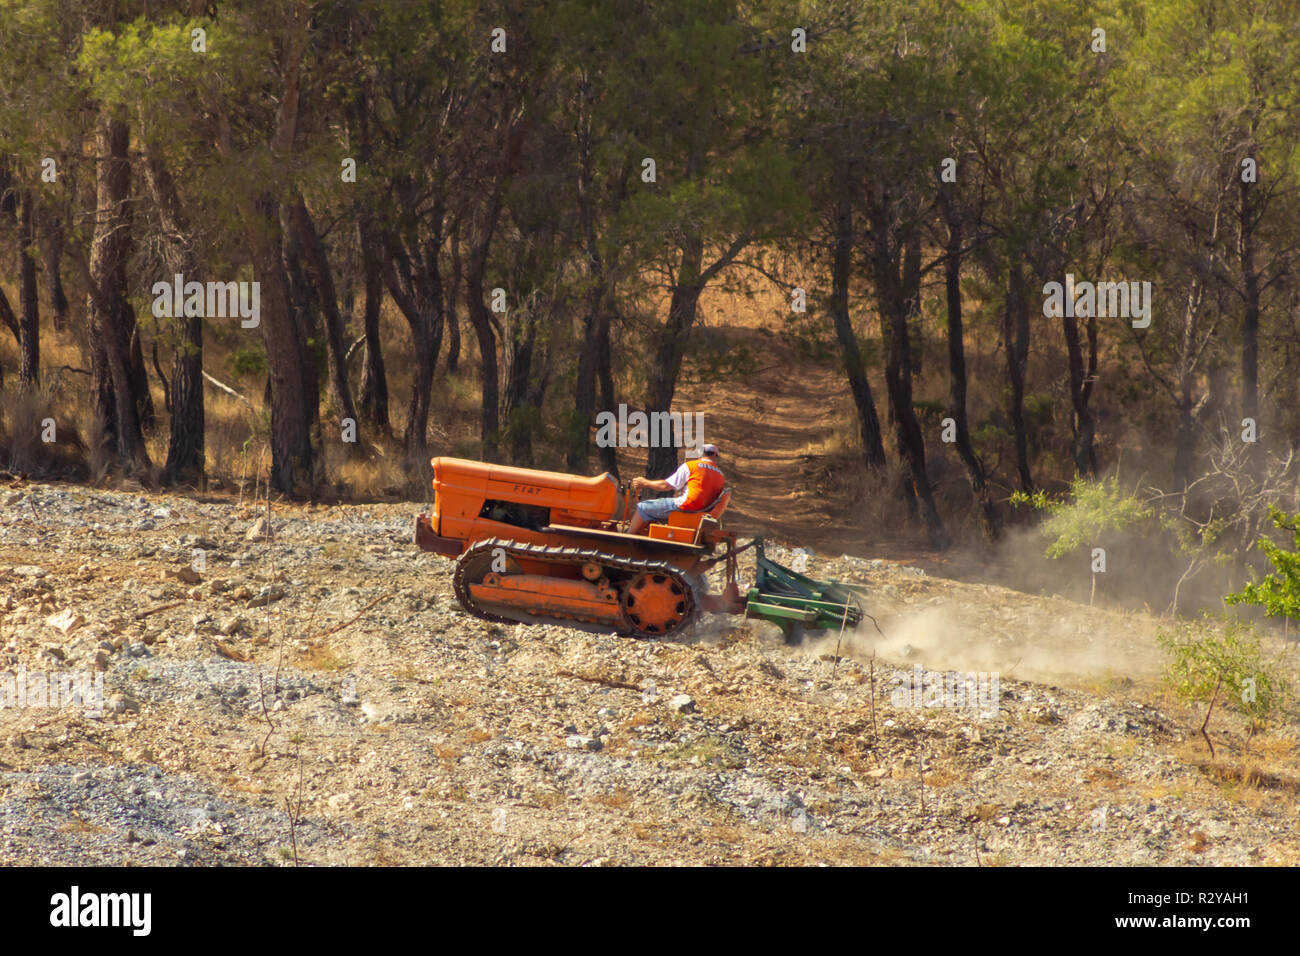 Tracteur à chenilles Fiat 605C labourant une pente Almond Grove, vallée d'Almanzora, province d'Almeria, Andalousie, Espagne Banque D'Images